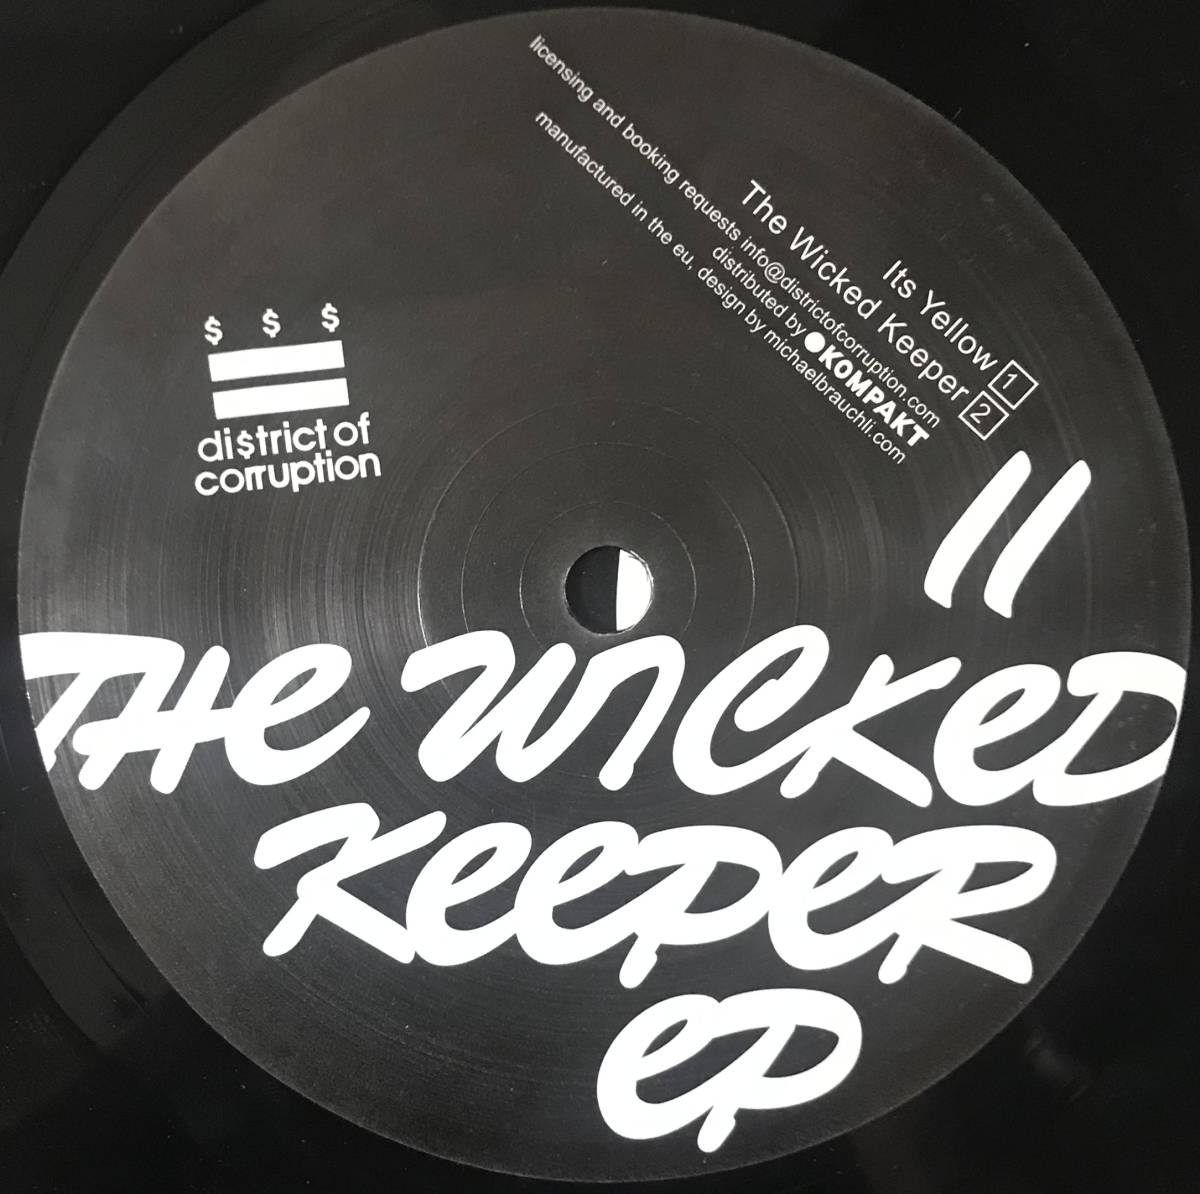 [ 12 / レコード ] Sweet 'n Candy / The Wicked Keeper EP ( Tech House / Minimal ) District Of Corruption ミニマル ハウス_画像4